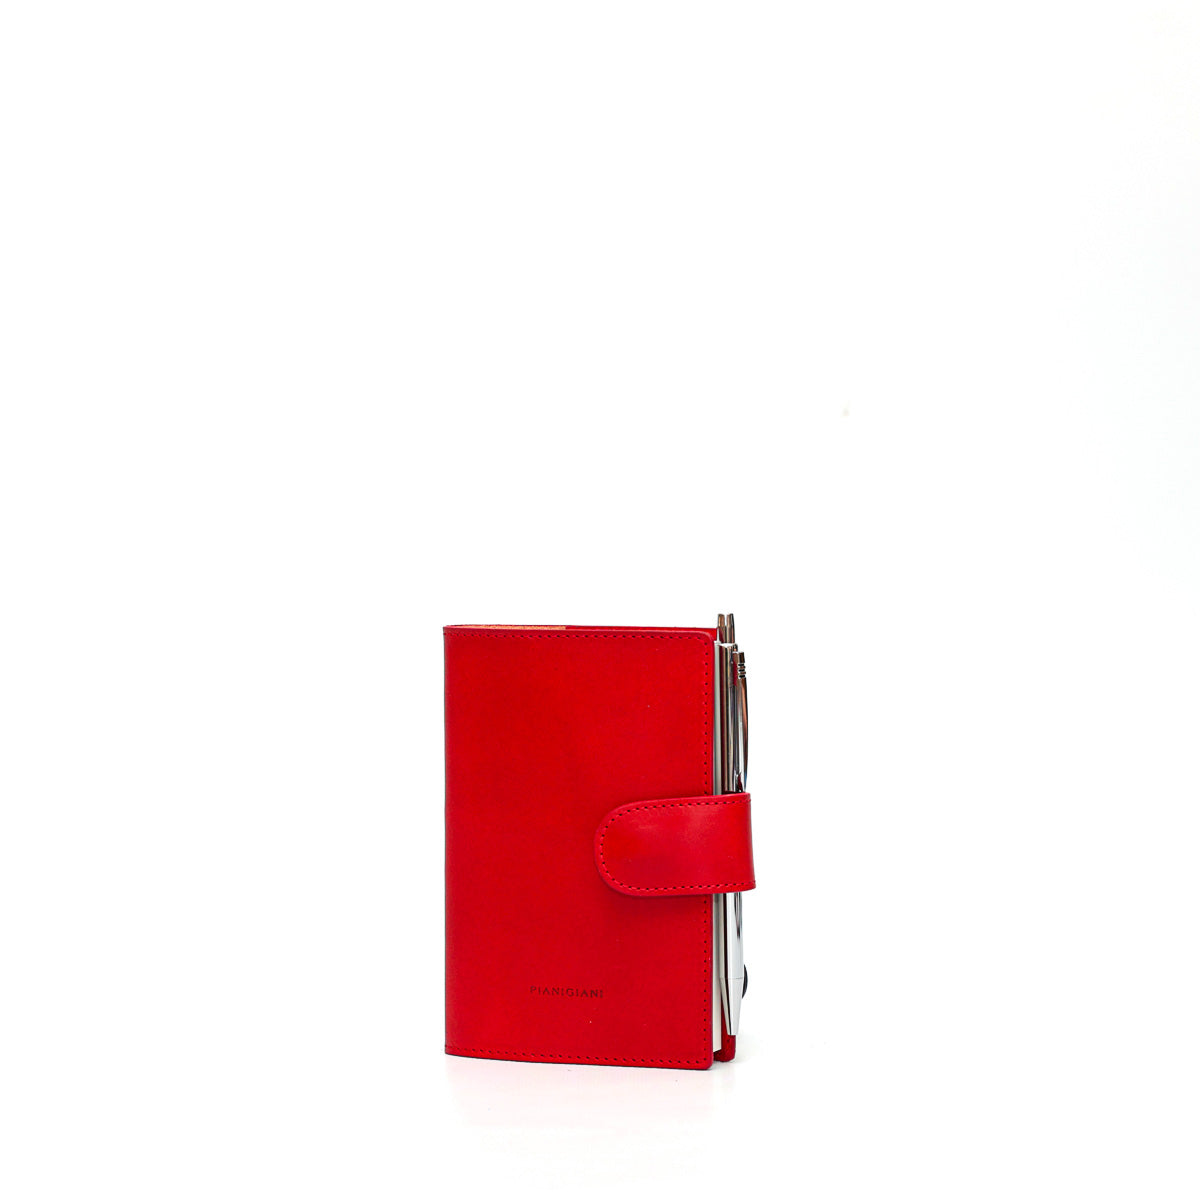 Diario piccolo in pelle liscia rosso, prodotto a mano da Pianigianibags